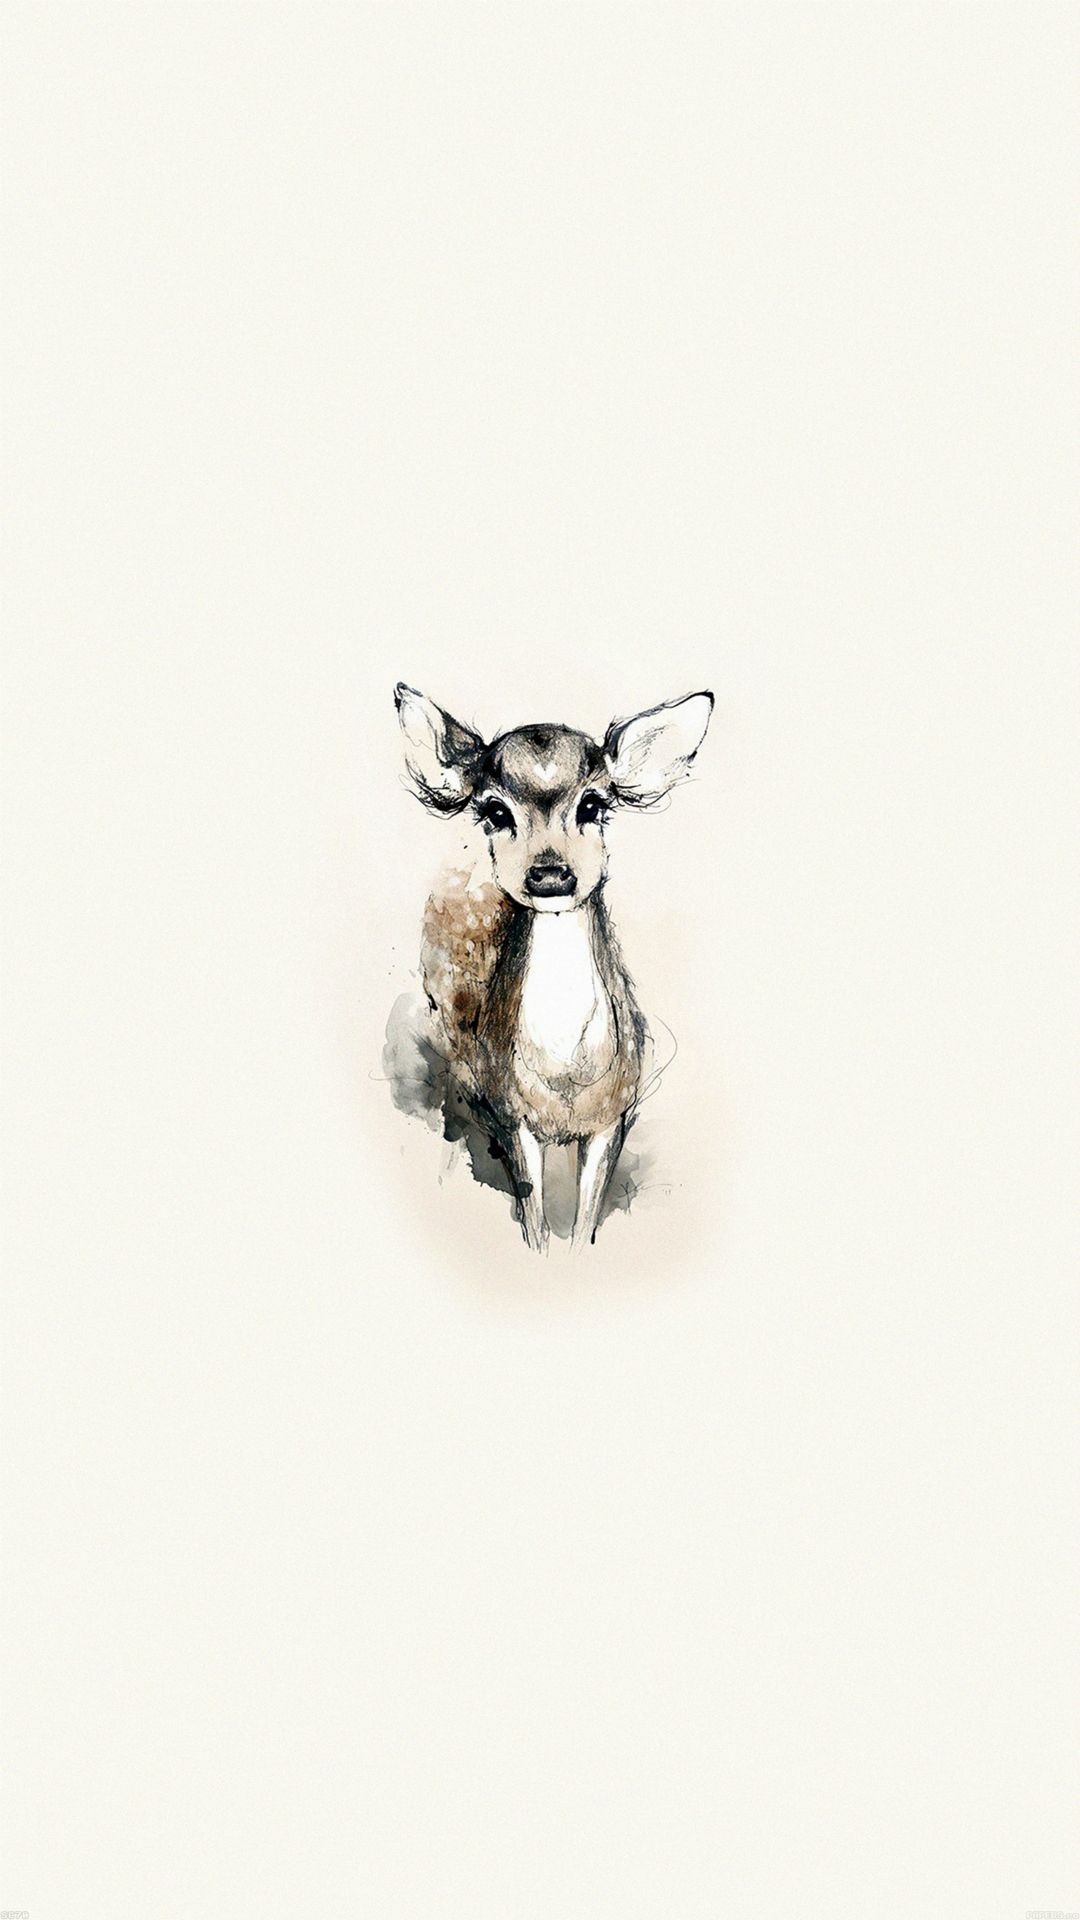 A deer illustration on a white background - Deer